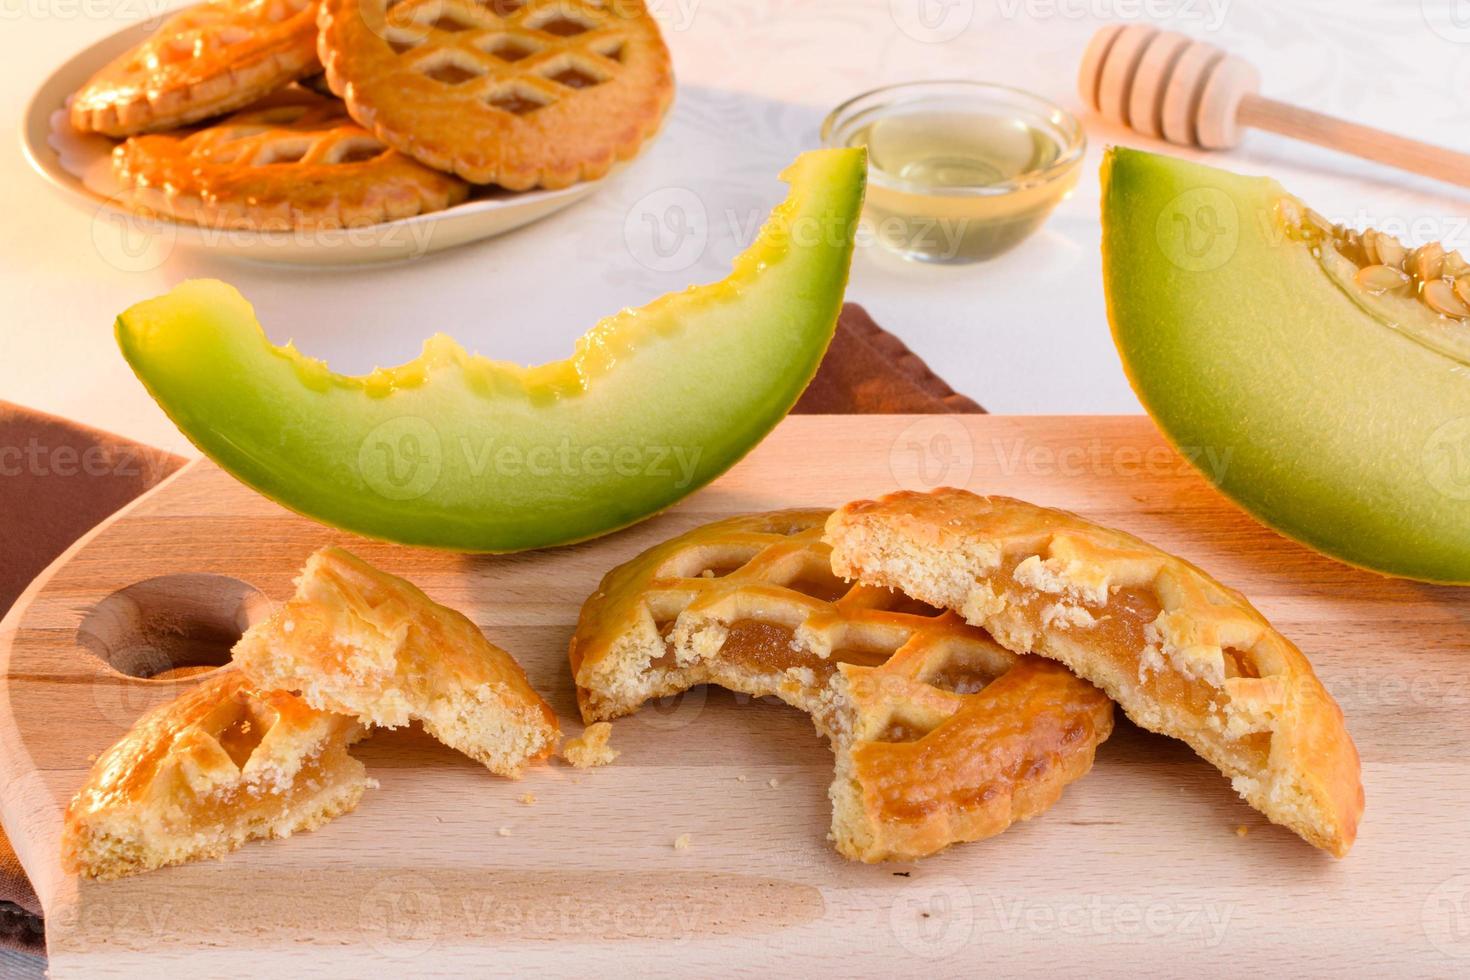 biscuits au melon avec du miel. biscuits frais fourrés d'une savoureuse farce maison de melon. photo